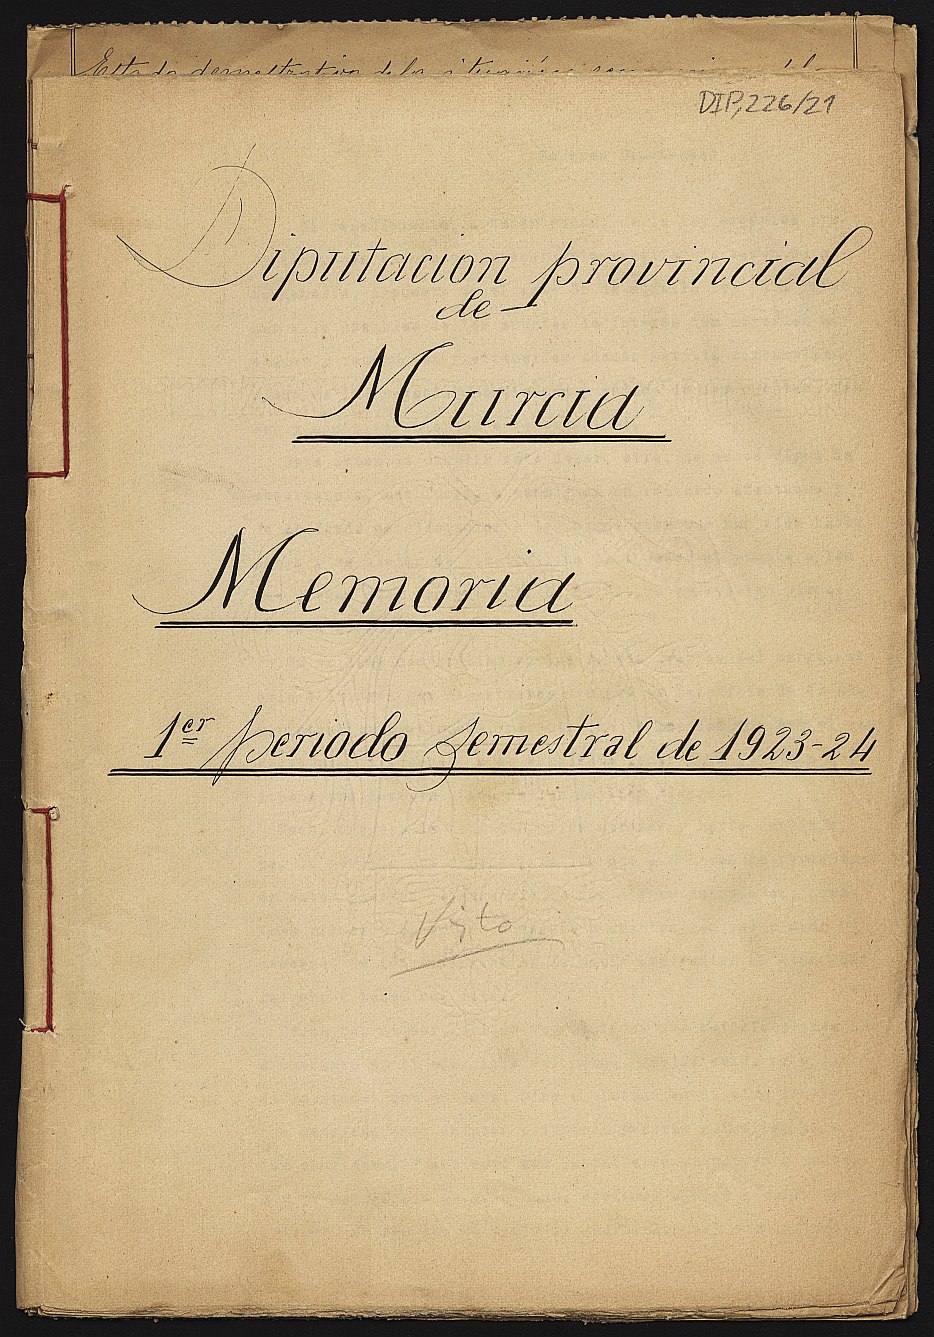 Memoria de la Comisión Provincial: primer periodo semestral de 1923.